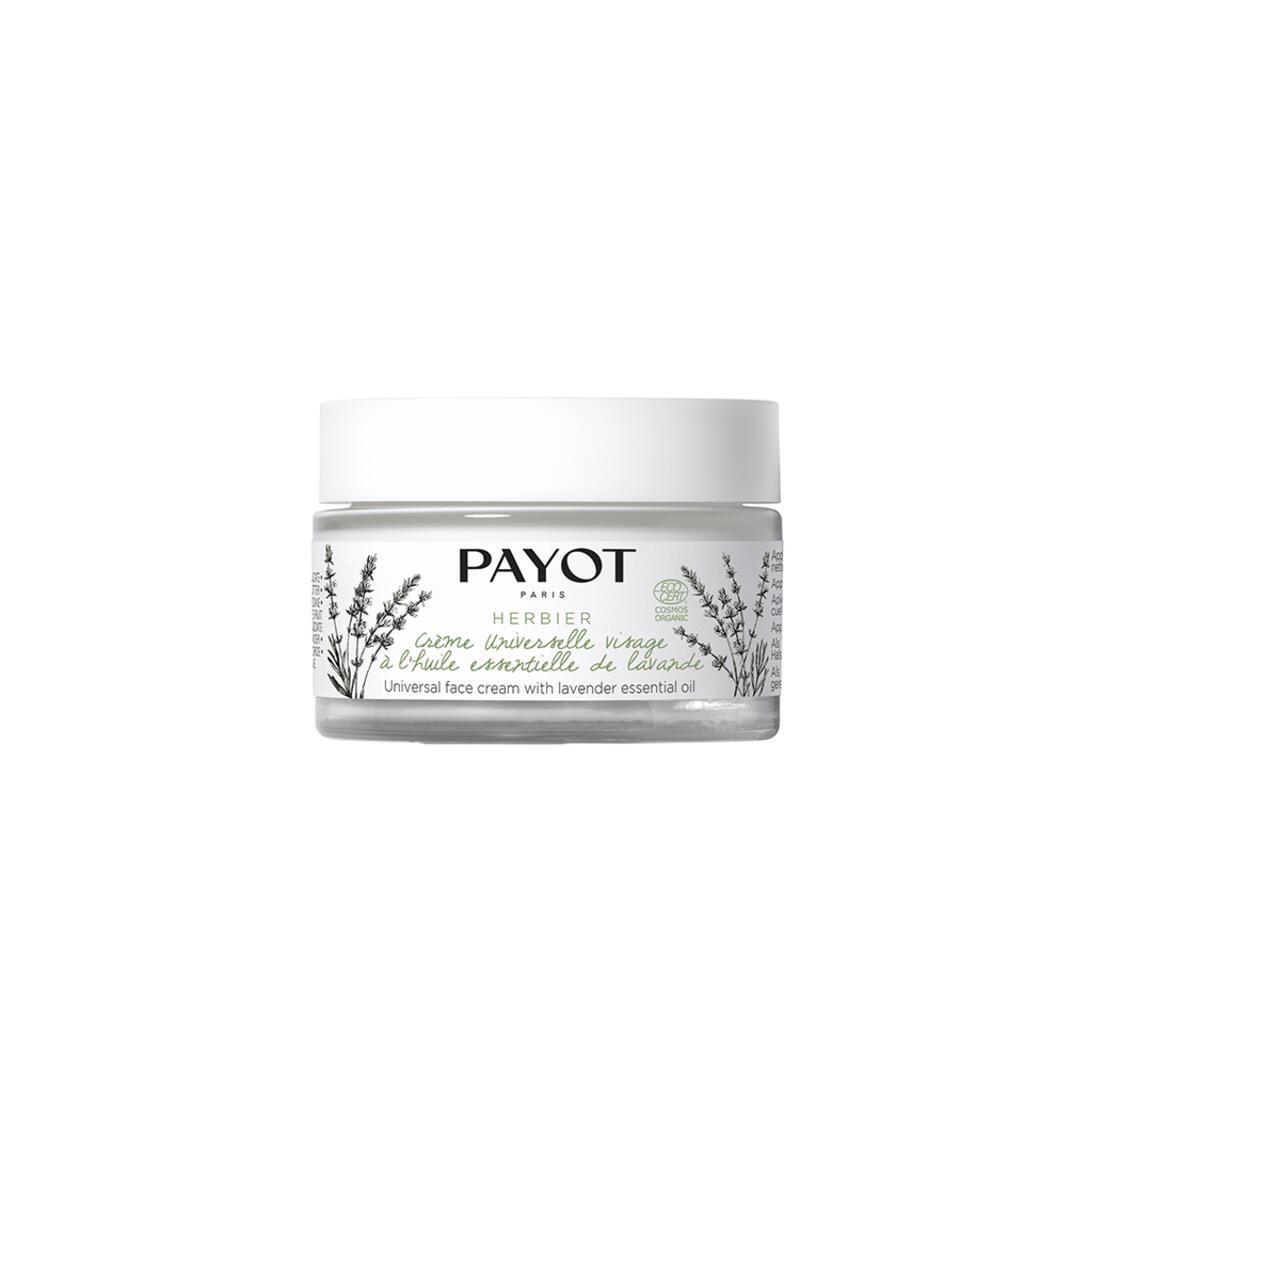 Payot, Herbier Crème Universelle visage à l'huile essentielle de lavande